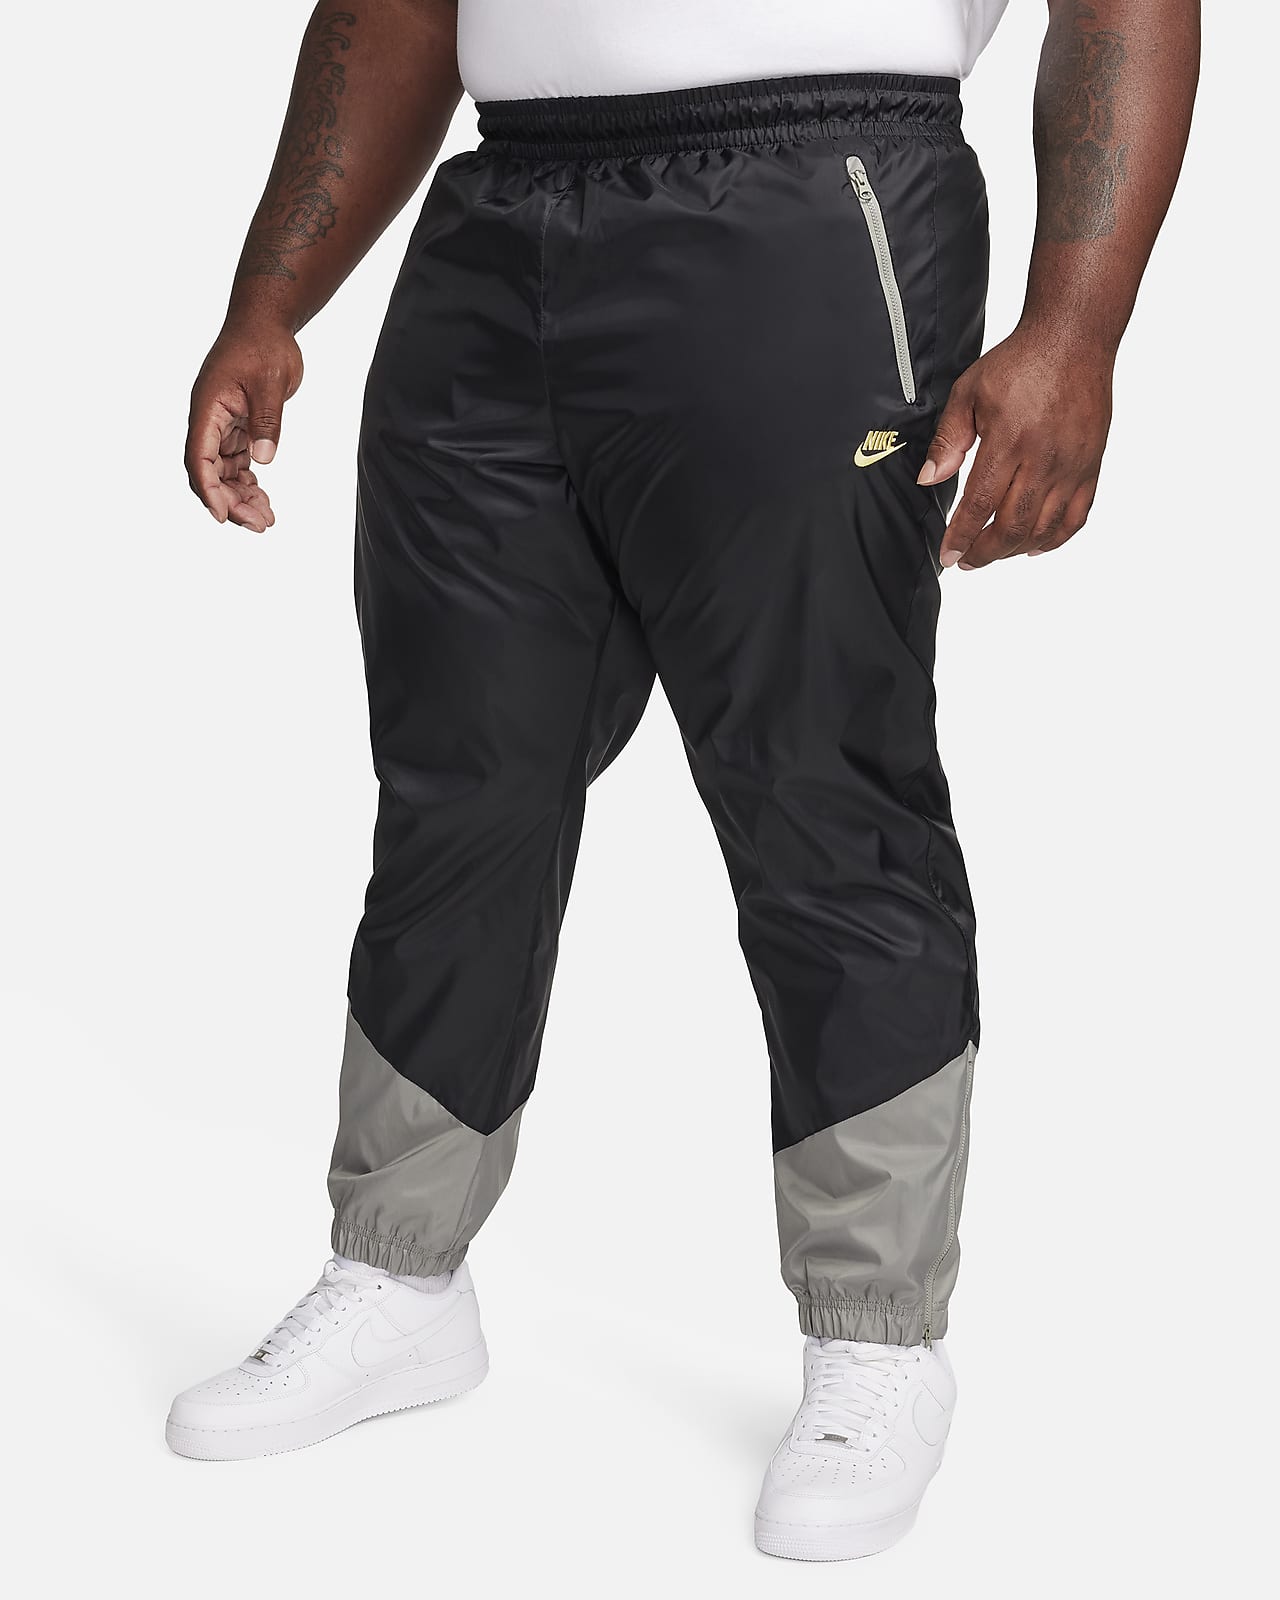 Nike Sportswear Windrunner Track Pants Men's Running Training Black  CN8774-010 for sale online